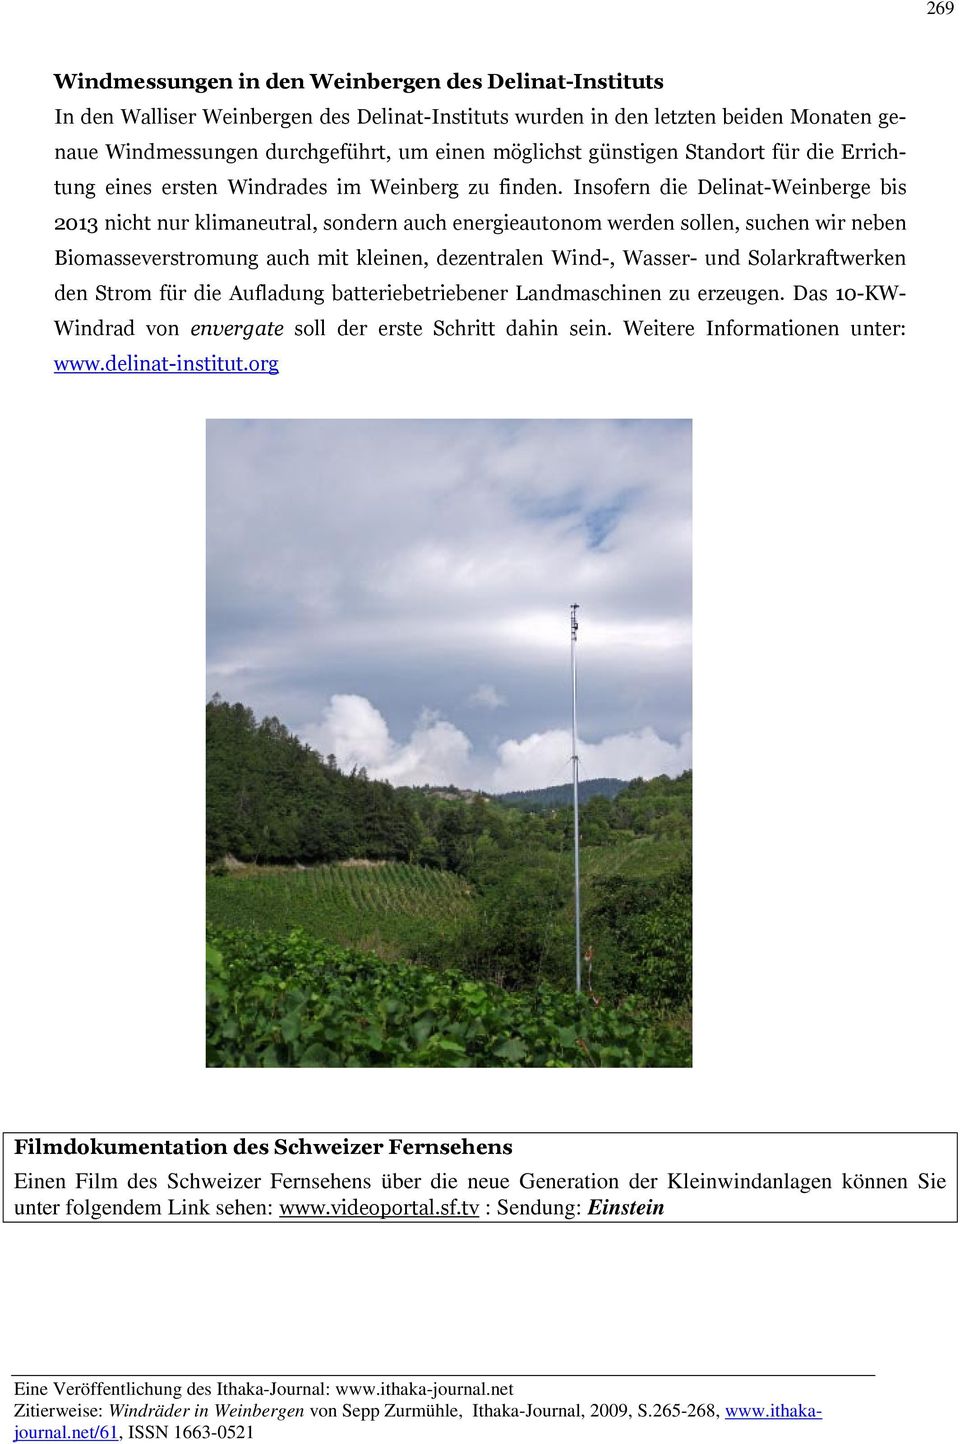 Insofern die Delinat-Weinberge bis 2013 nicht nur klimaneutral, sondern auch energieautonom werden sollen, suchen wir neben Biomasseverstromung auch mit kleinen, dezentralen Wind-, Wasser- und